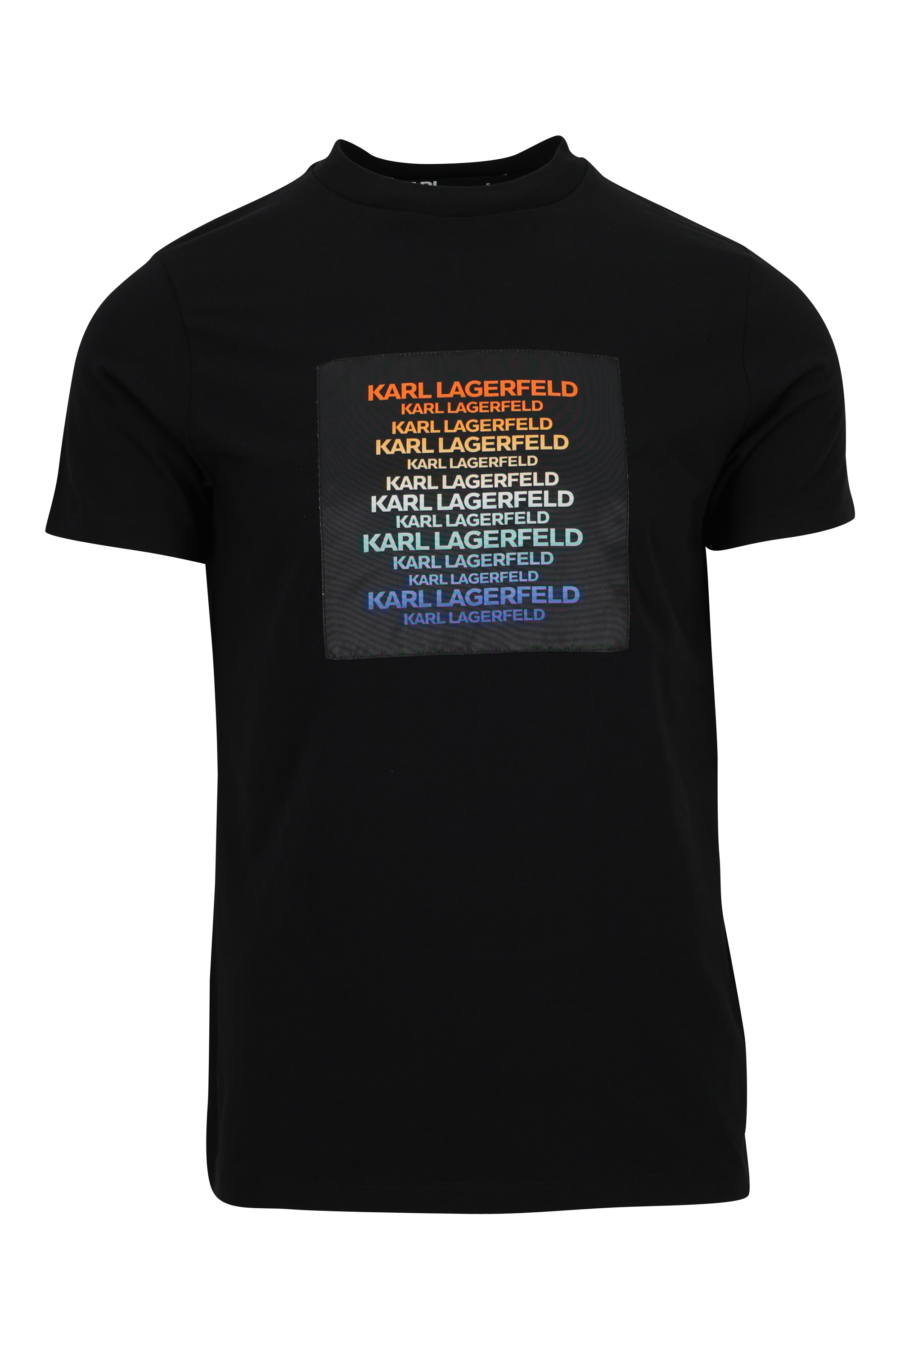 Camiseta negra con maxilogo en degradé - 4062226958028